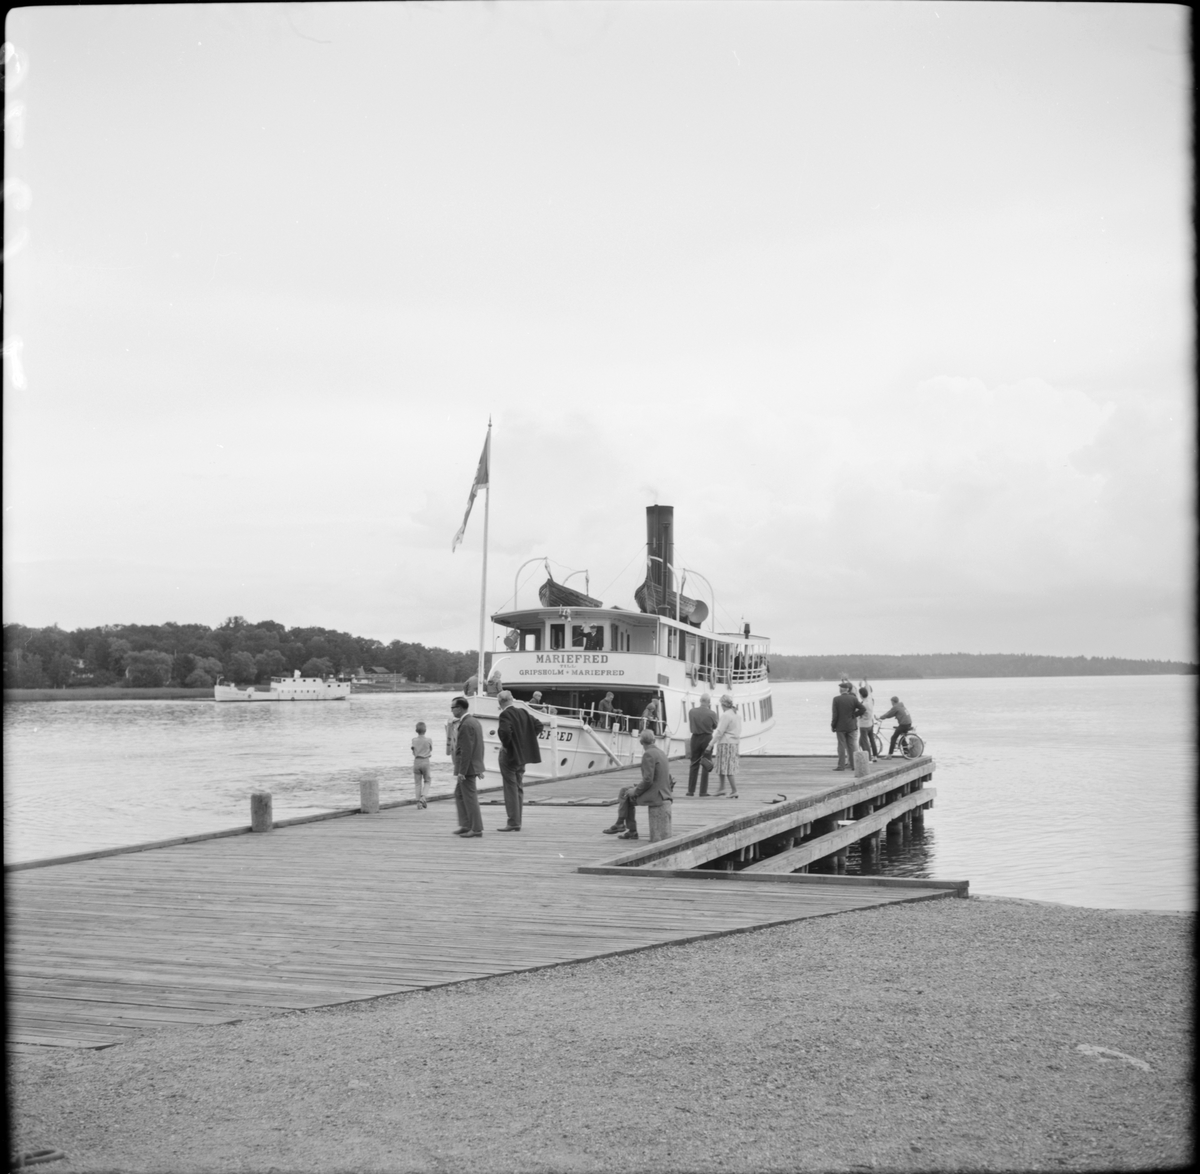 Ångbåt S/S Mariefred som trafikerade mellan Gripsholm-Mariefred lägger till vid bryggan i Mariefred.